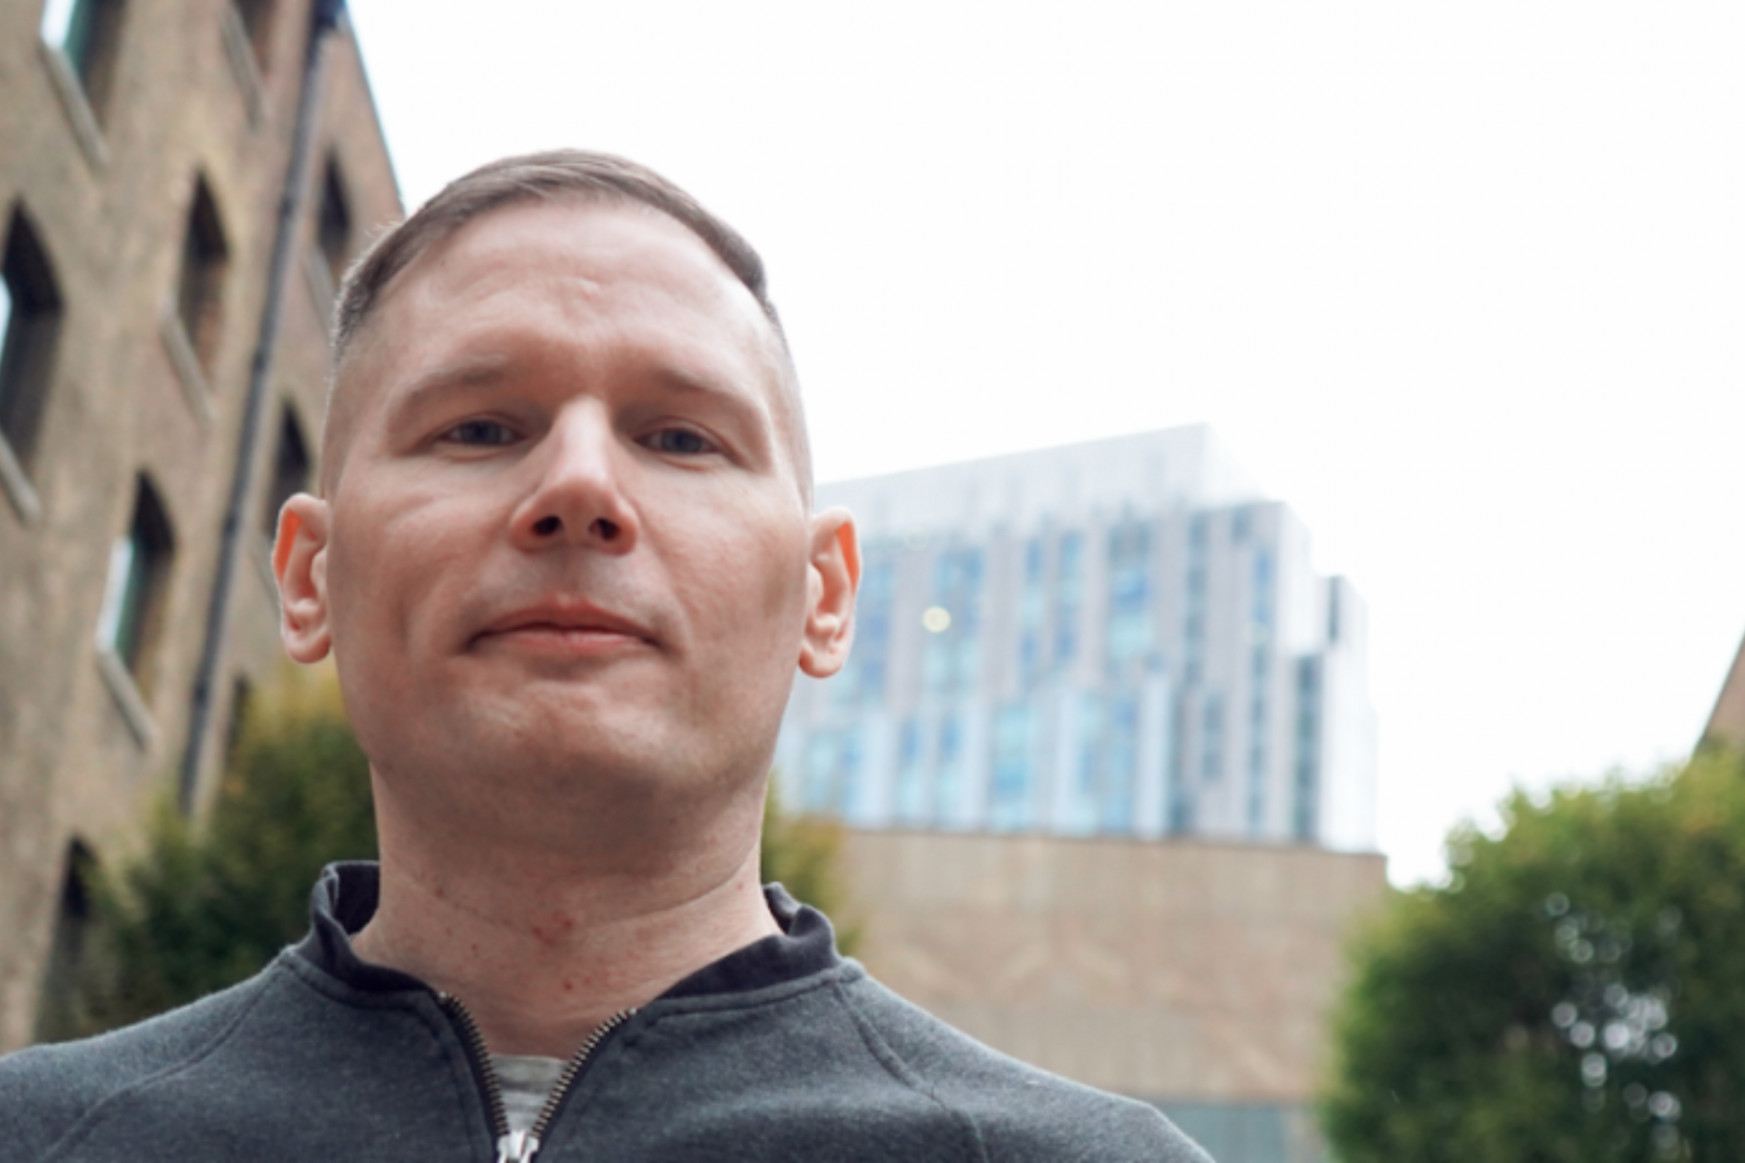 Nyelvész Józsi a Szlengblog és a Google után londoni startupper lett, Magyarországot is meghódítaná a cégével